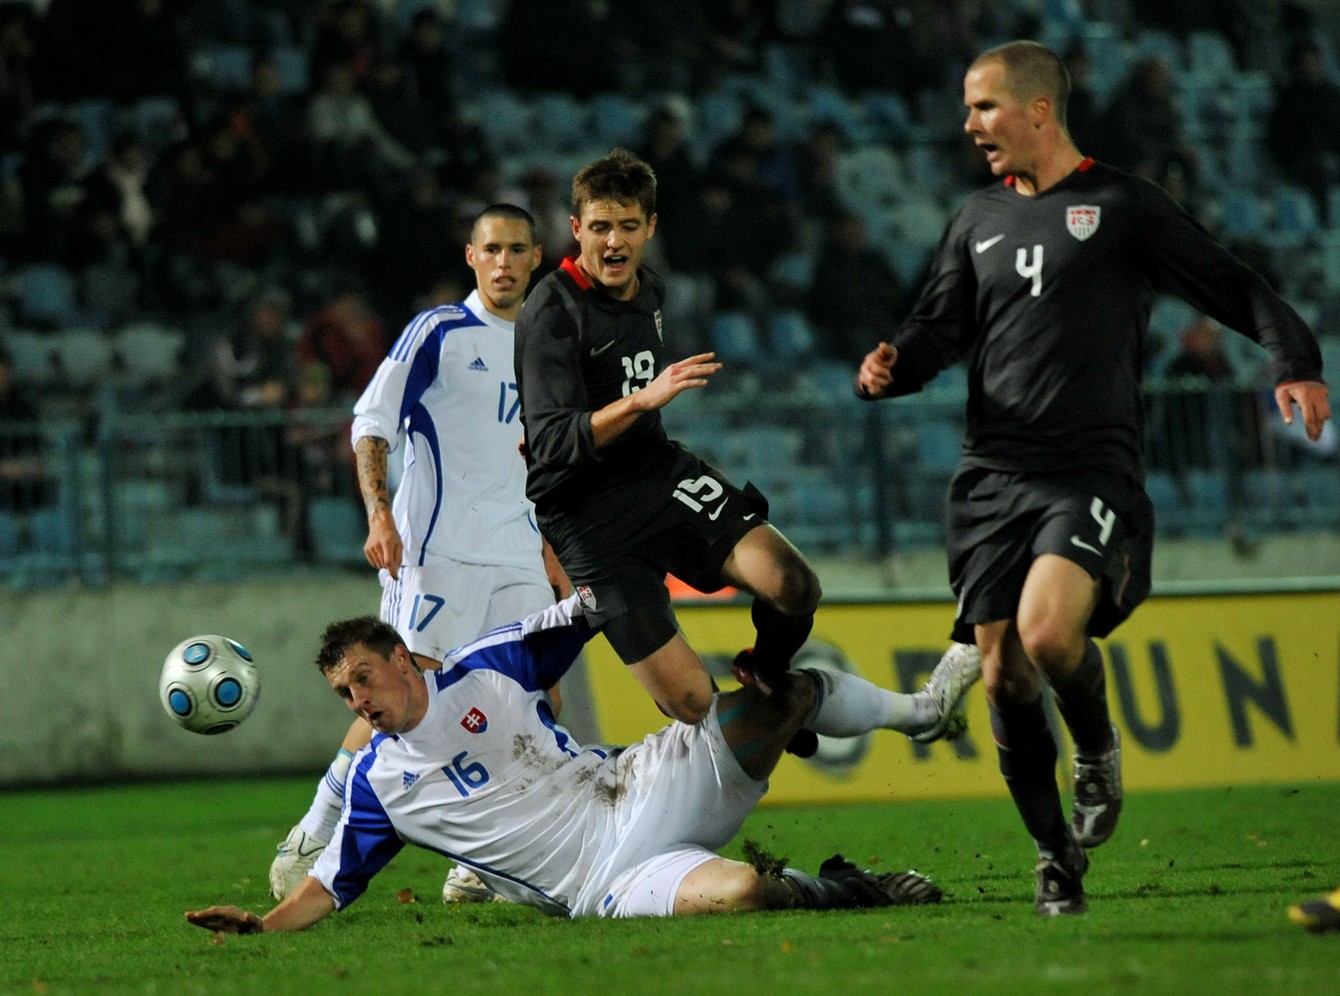 Naposledy sa predstavila slovenská futbalová reprezentácia na Tehelnom poli 14.11.2009	(Slovensko - USA 1:0).	